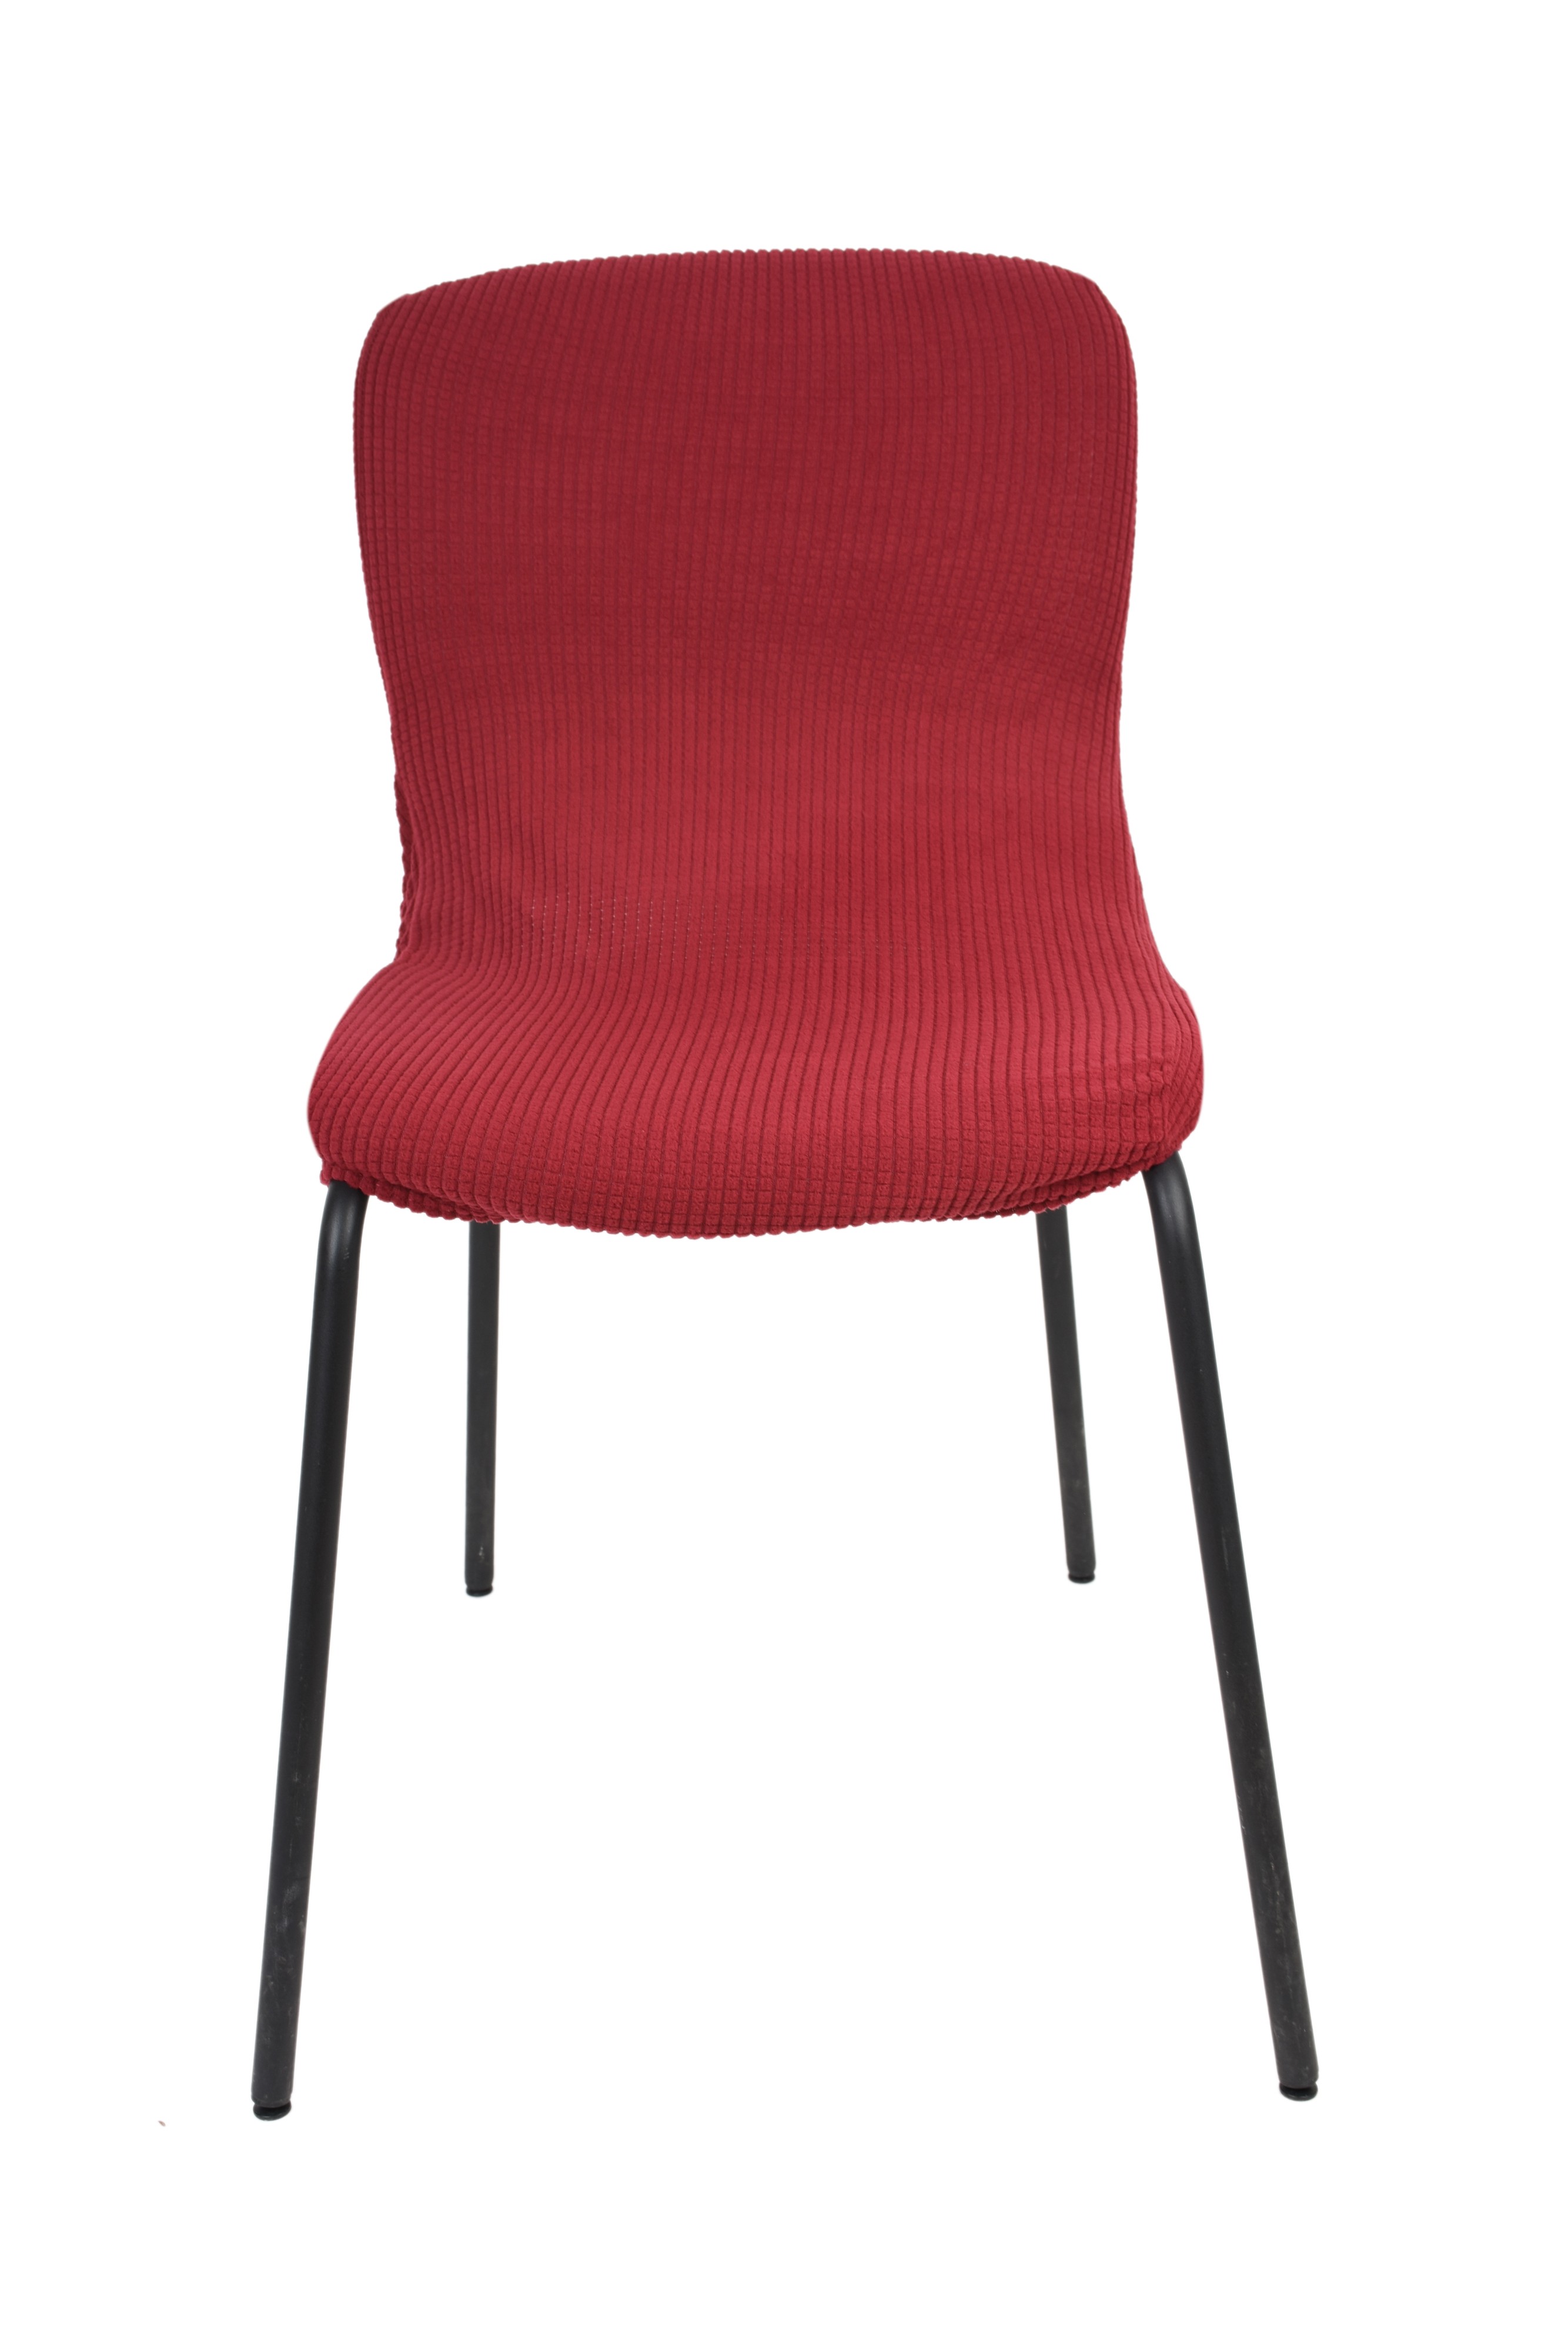 غطاء كرسي MH-1863-1